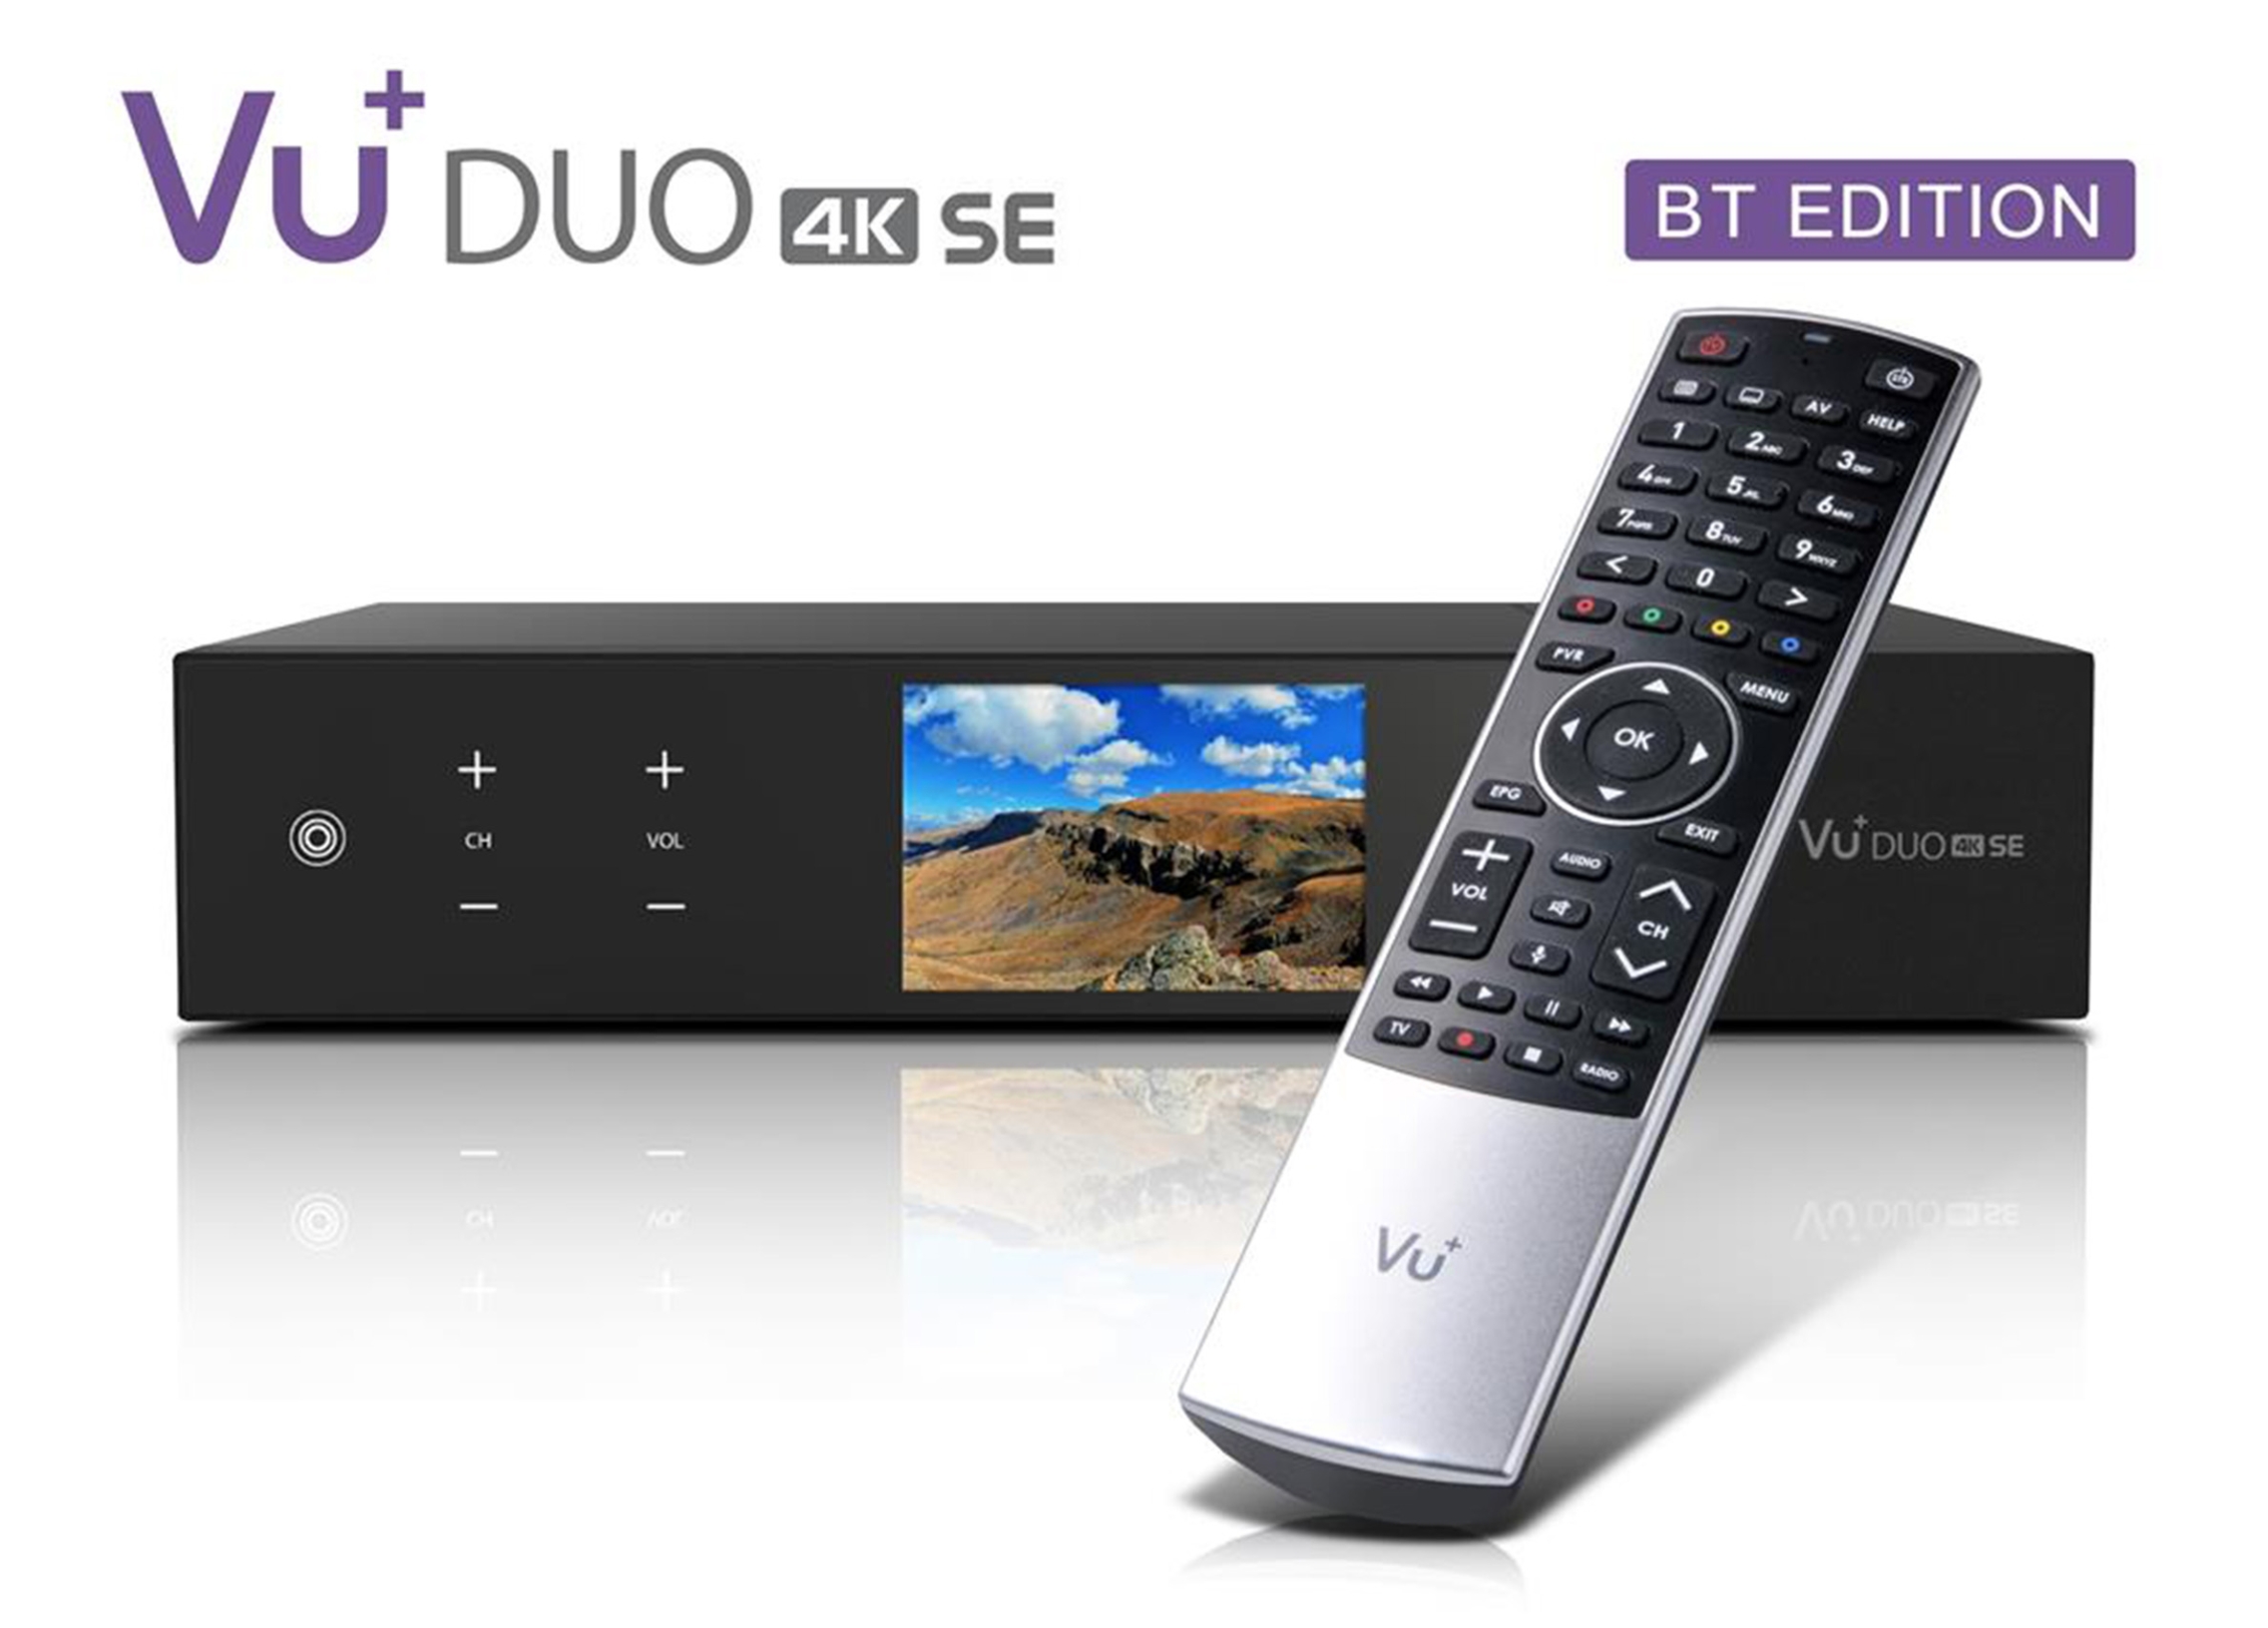 VU+ Duo 4K SE BT 1xDVB-C FBC/1x DVB-T2 DUAL Linux Receiver